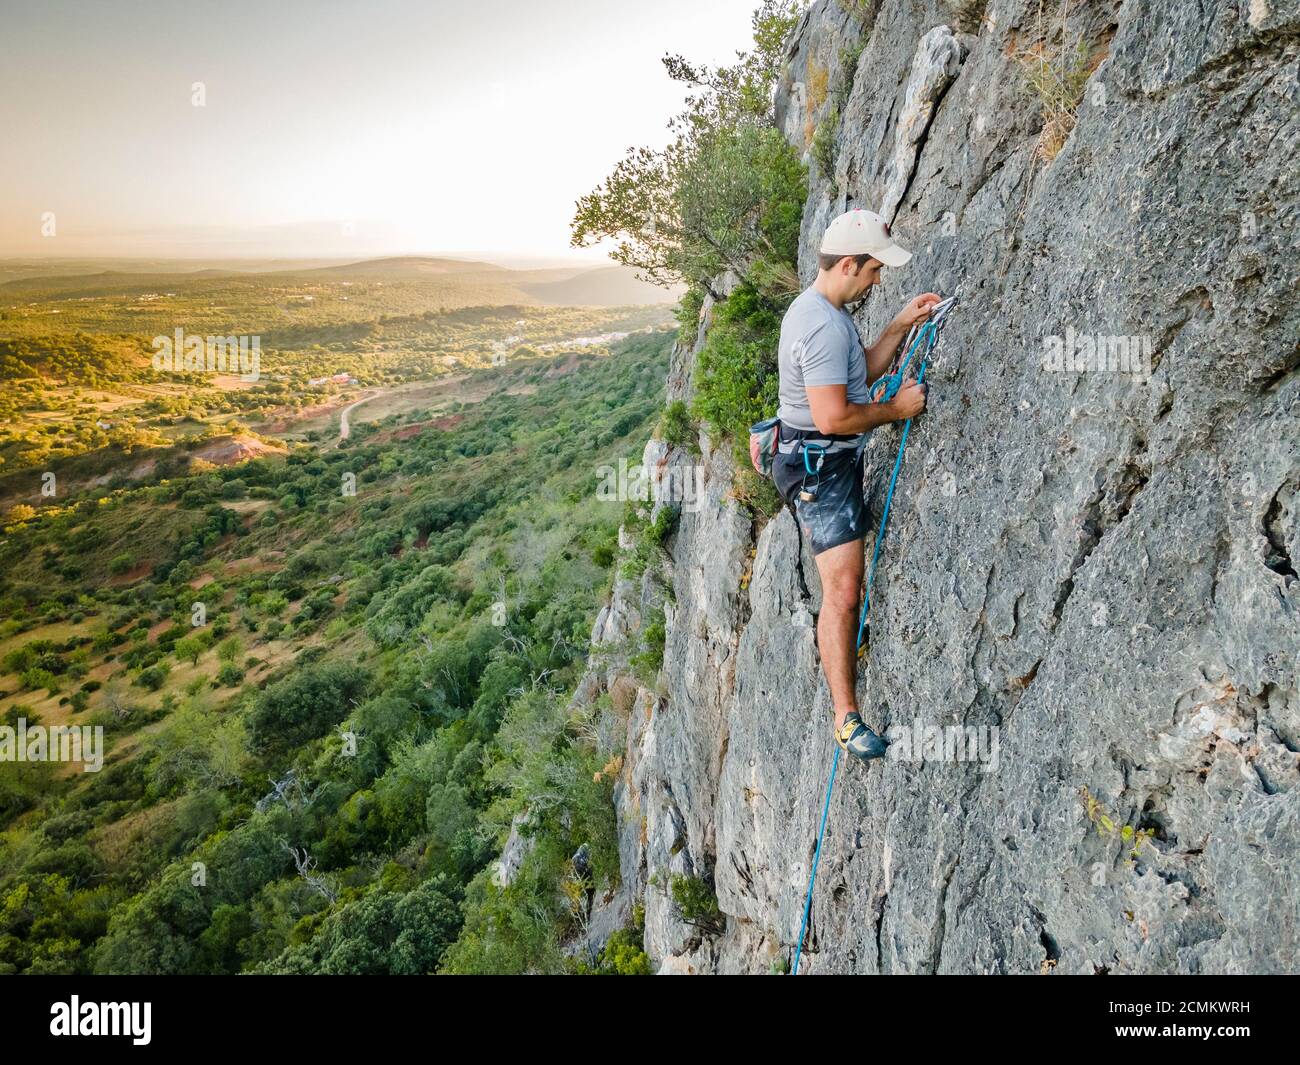 Mann, der einen steilen, schlichten Felsen in Portugal klettert Stockfoto